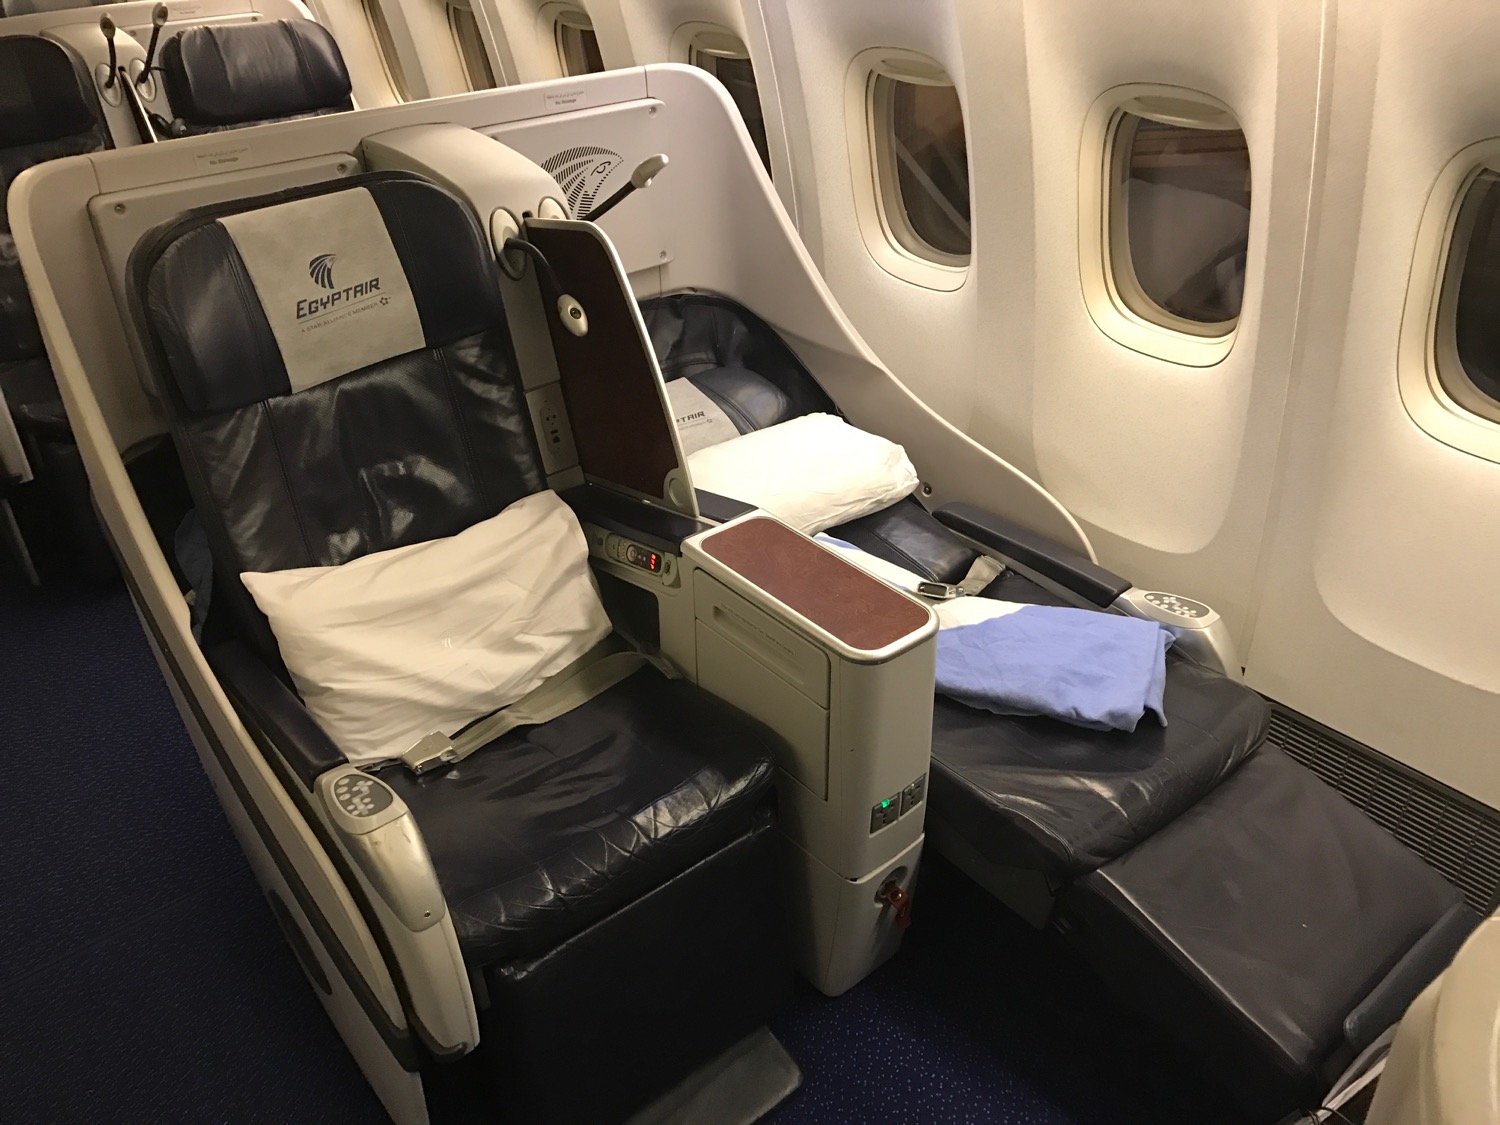 Egyptair 777-300 business class